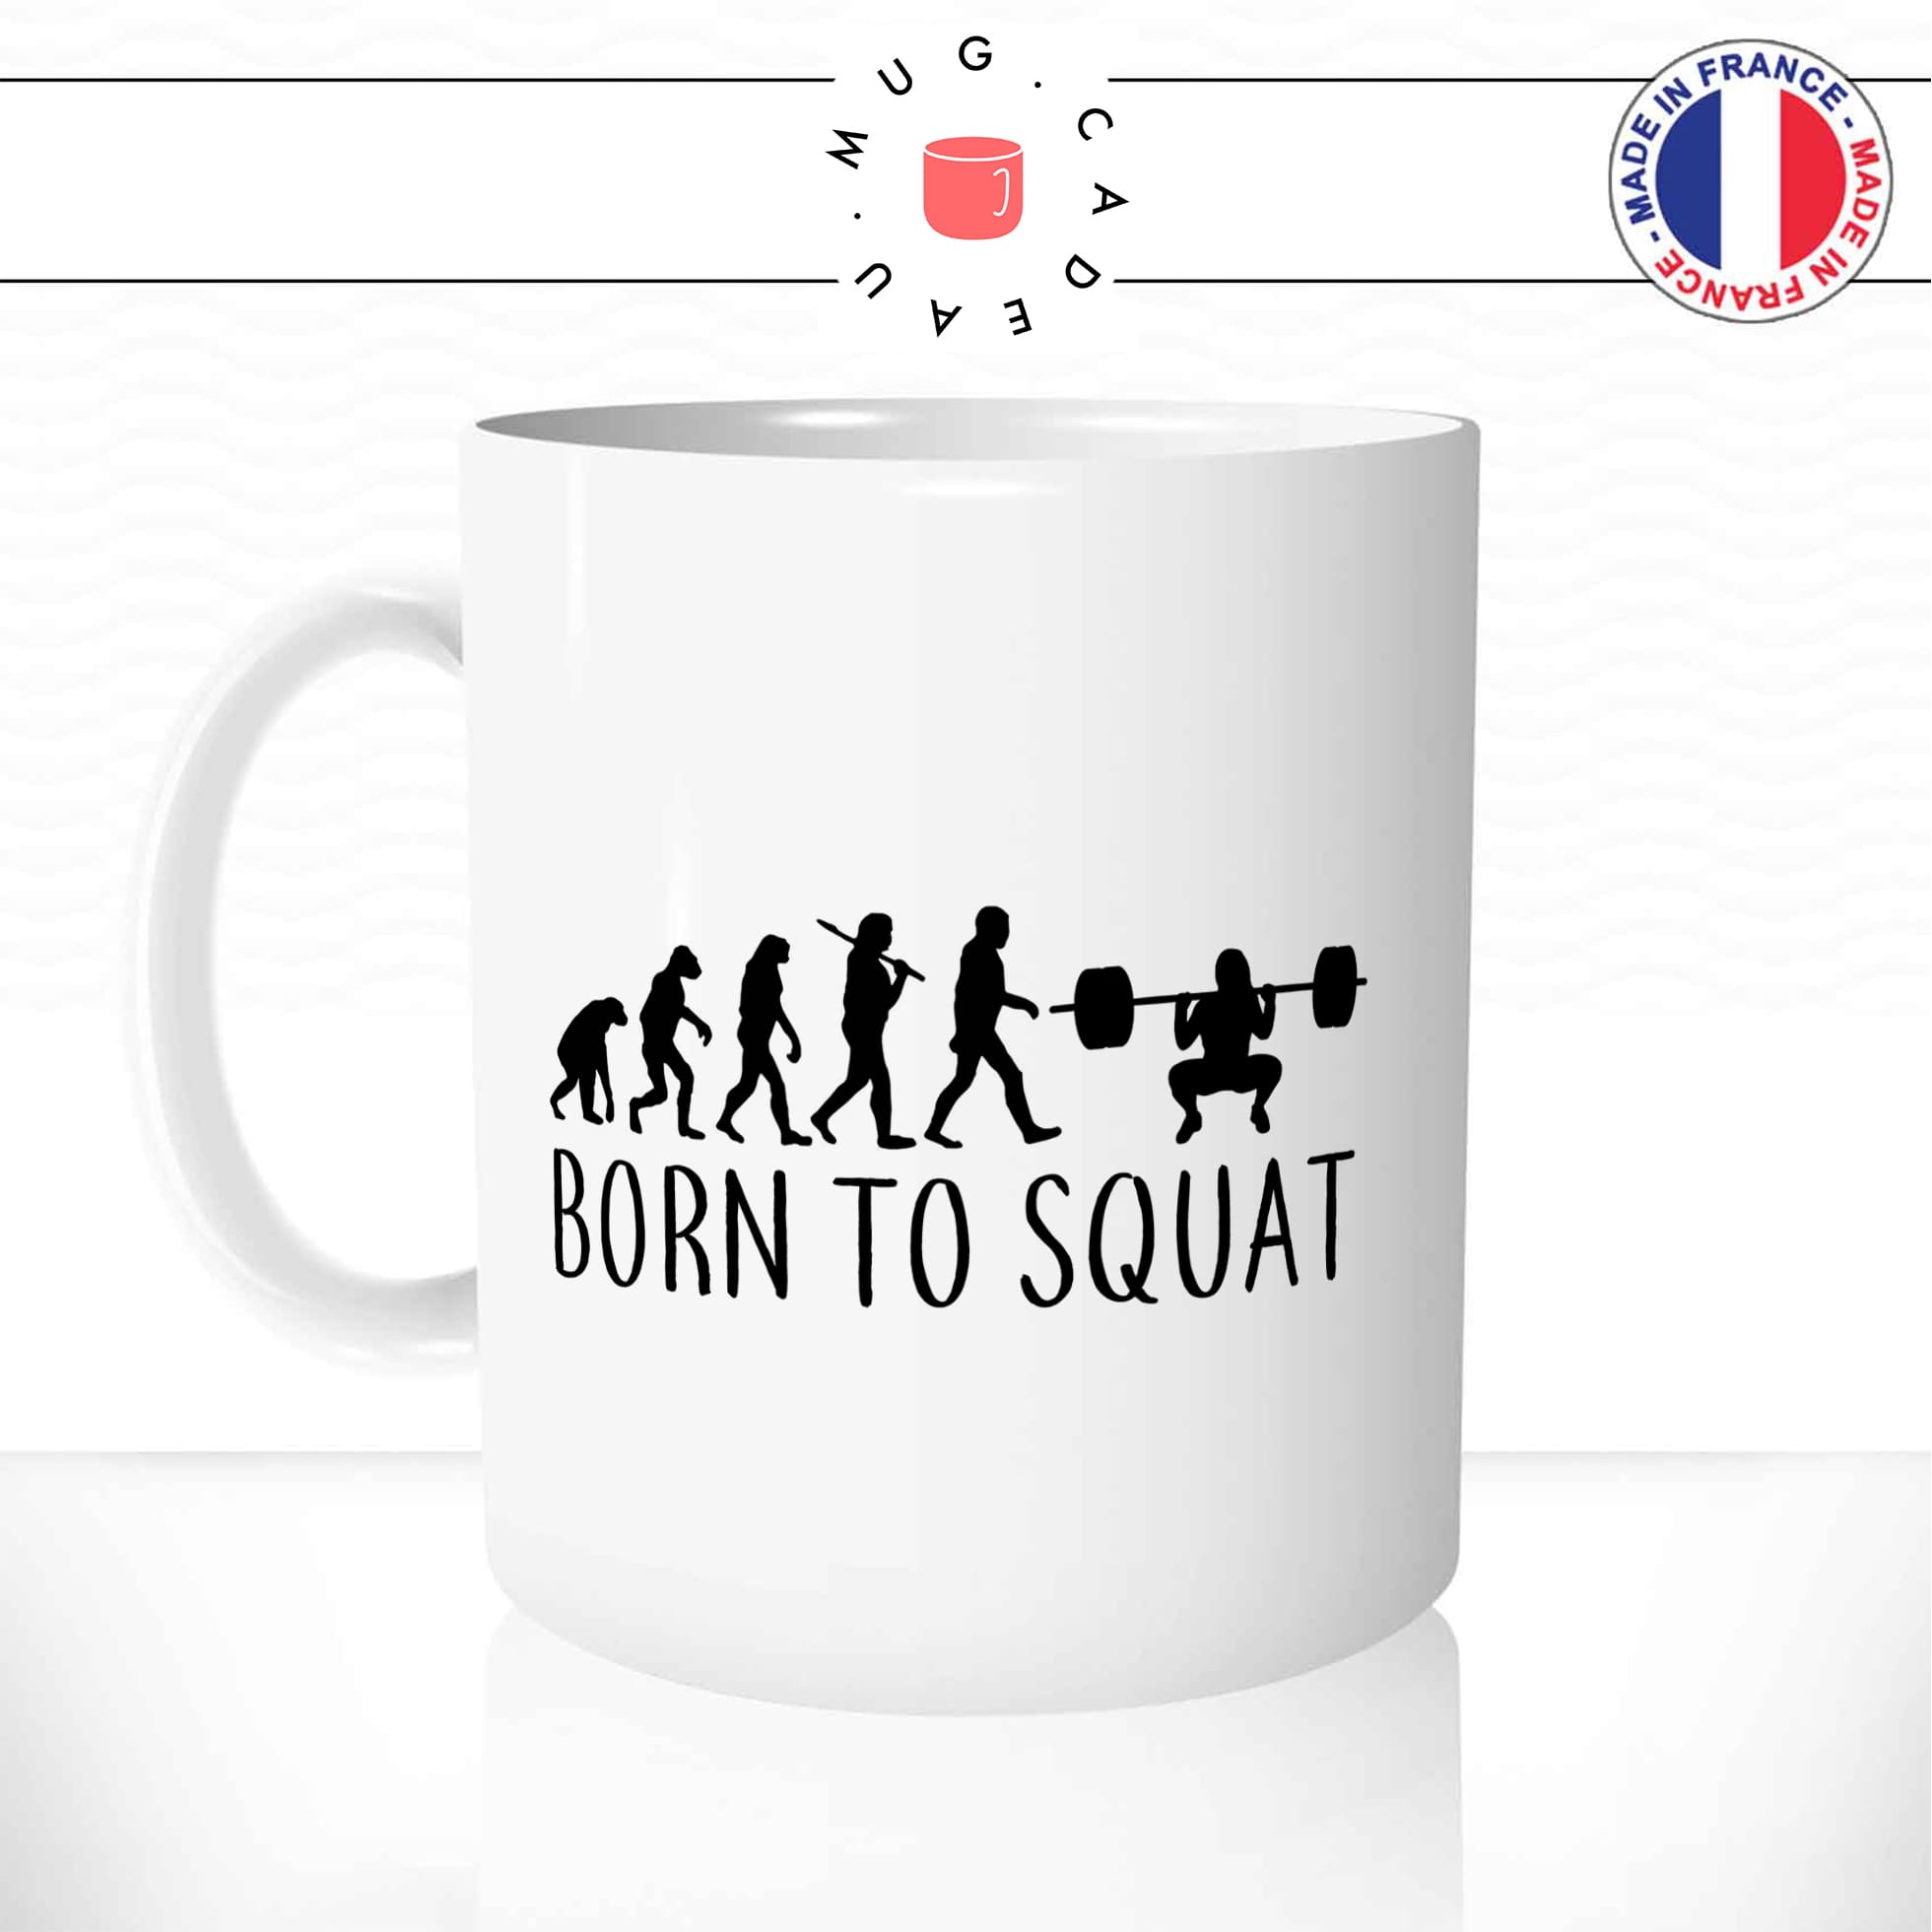 Mug Born To Squat